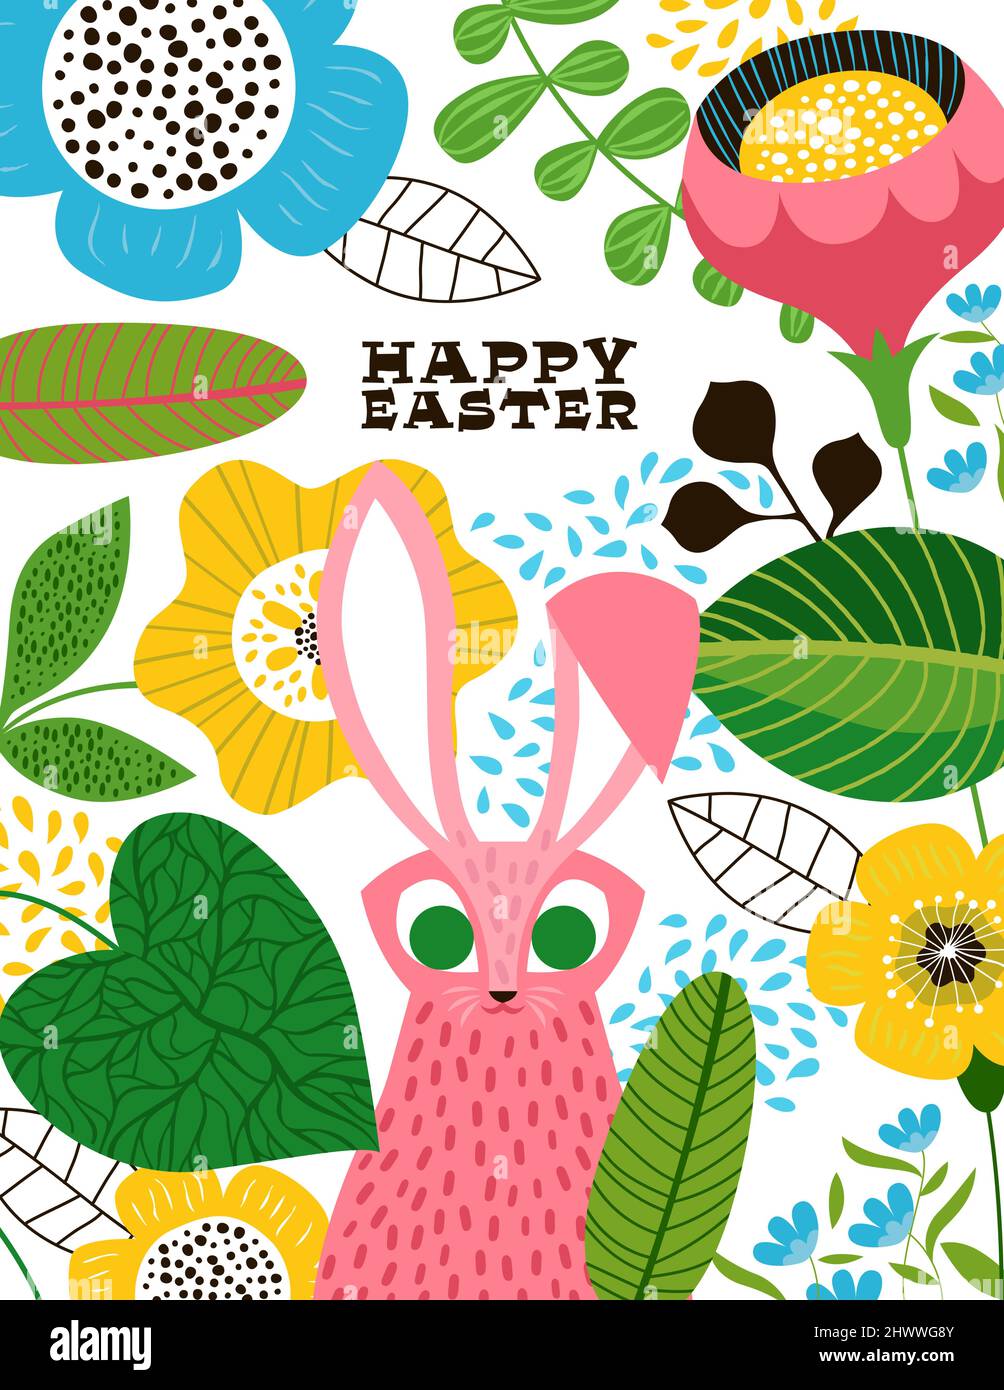 Frohe Ostern Grußkarte von lustigen Kaninchen Tier in Volkskunst Stil mit Natur Dekoration. Frühlingsfest Hintergrund Illustration für traditionelle ch Stock Vektor